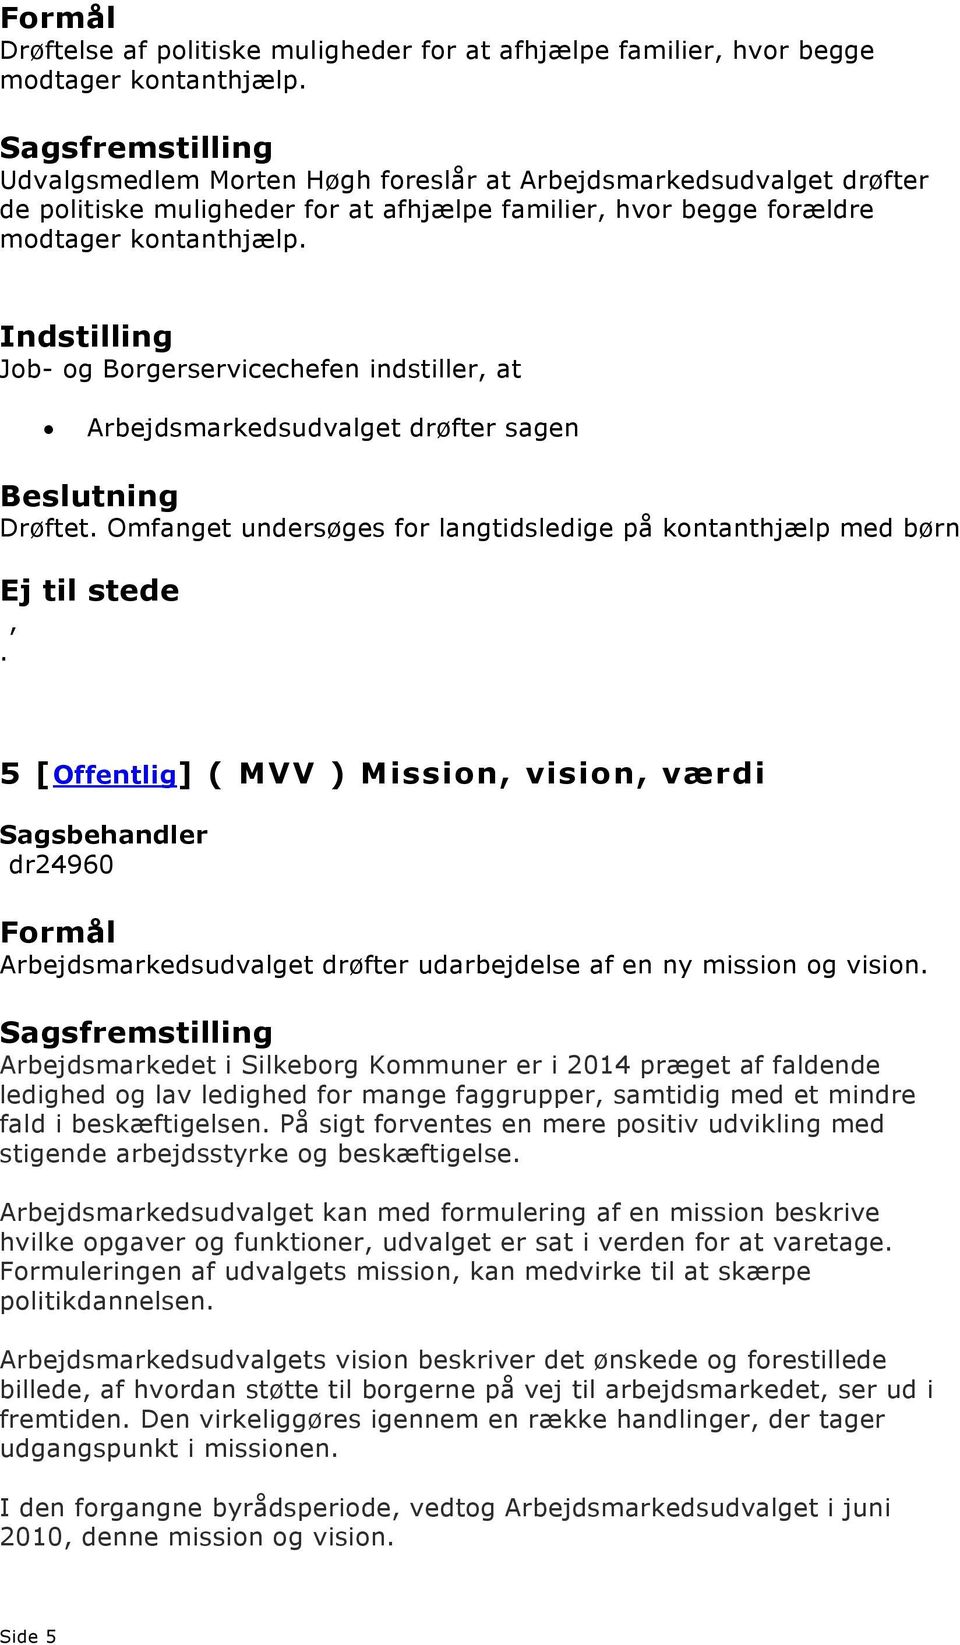 kontanthjælp med børn 5 [Offentlig] ( MVV ) Mission vision værdi dr24960 Arbejdsmarkedsudvalget drøfter udarbejdelse af en ny mission og vision Arbejdsmarkedet i Silkeborg Kommuner er i 2014 præget